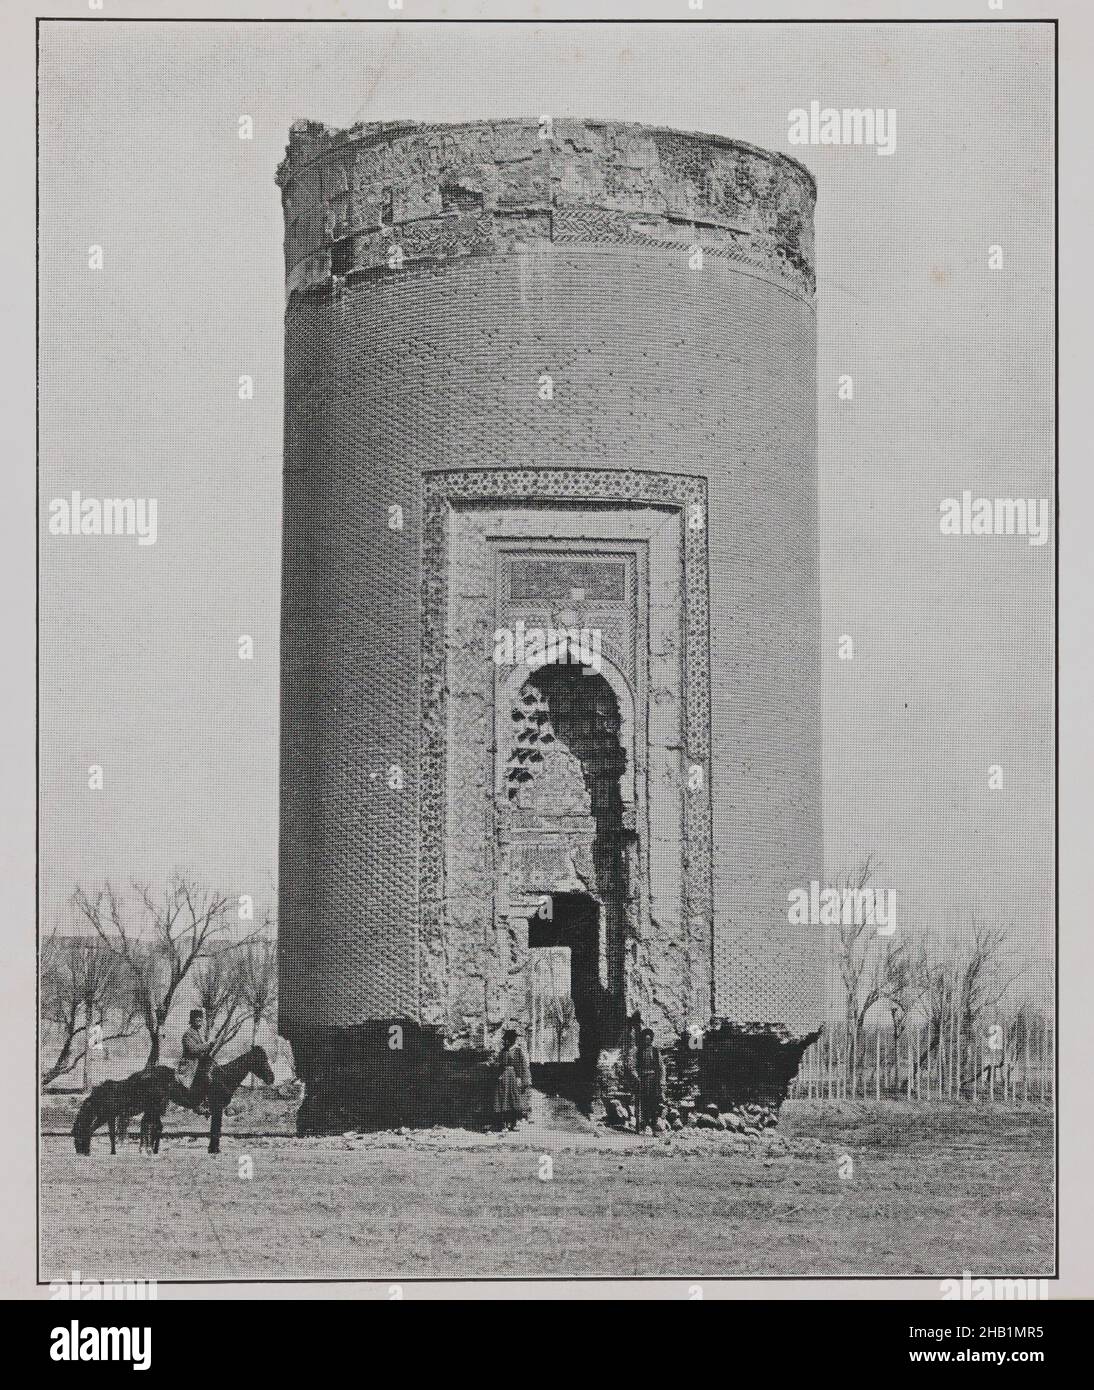 Una delle 274 fotografie vintage, inchiostro stampato su carta, fine 19th-inizio 20th secolo, Qajar, periodo Qajar, 5 7/8 x 5 5/16 pollici, 15 x 13,5 cm, architettura, fotografia, fotografia, torre Foto Stock